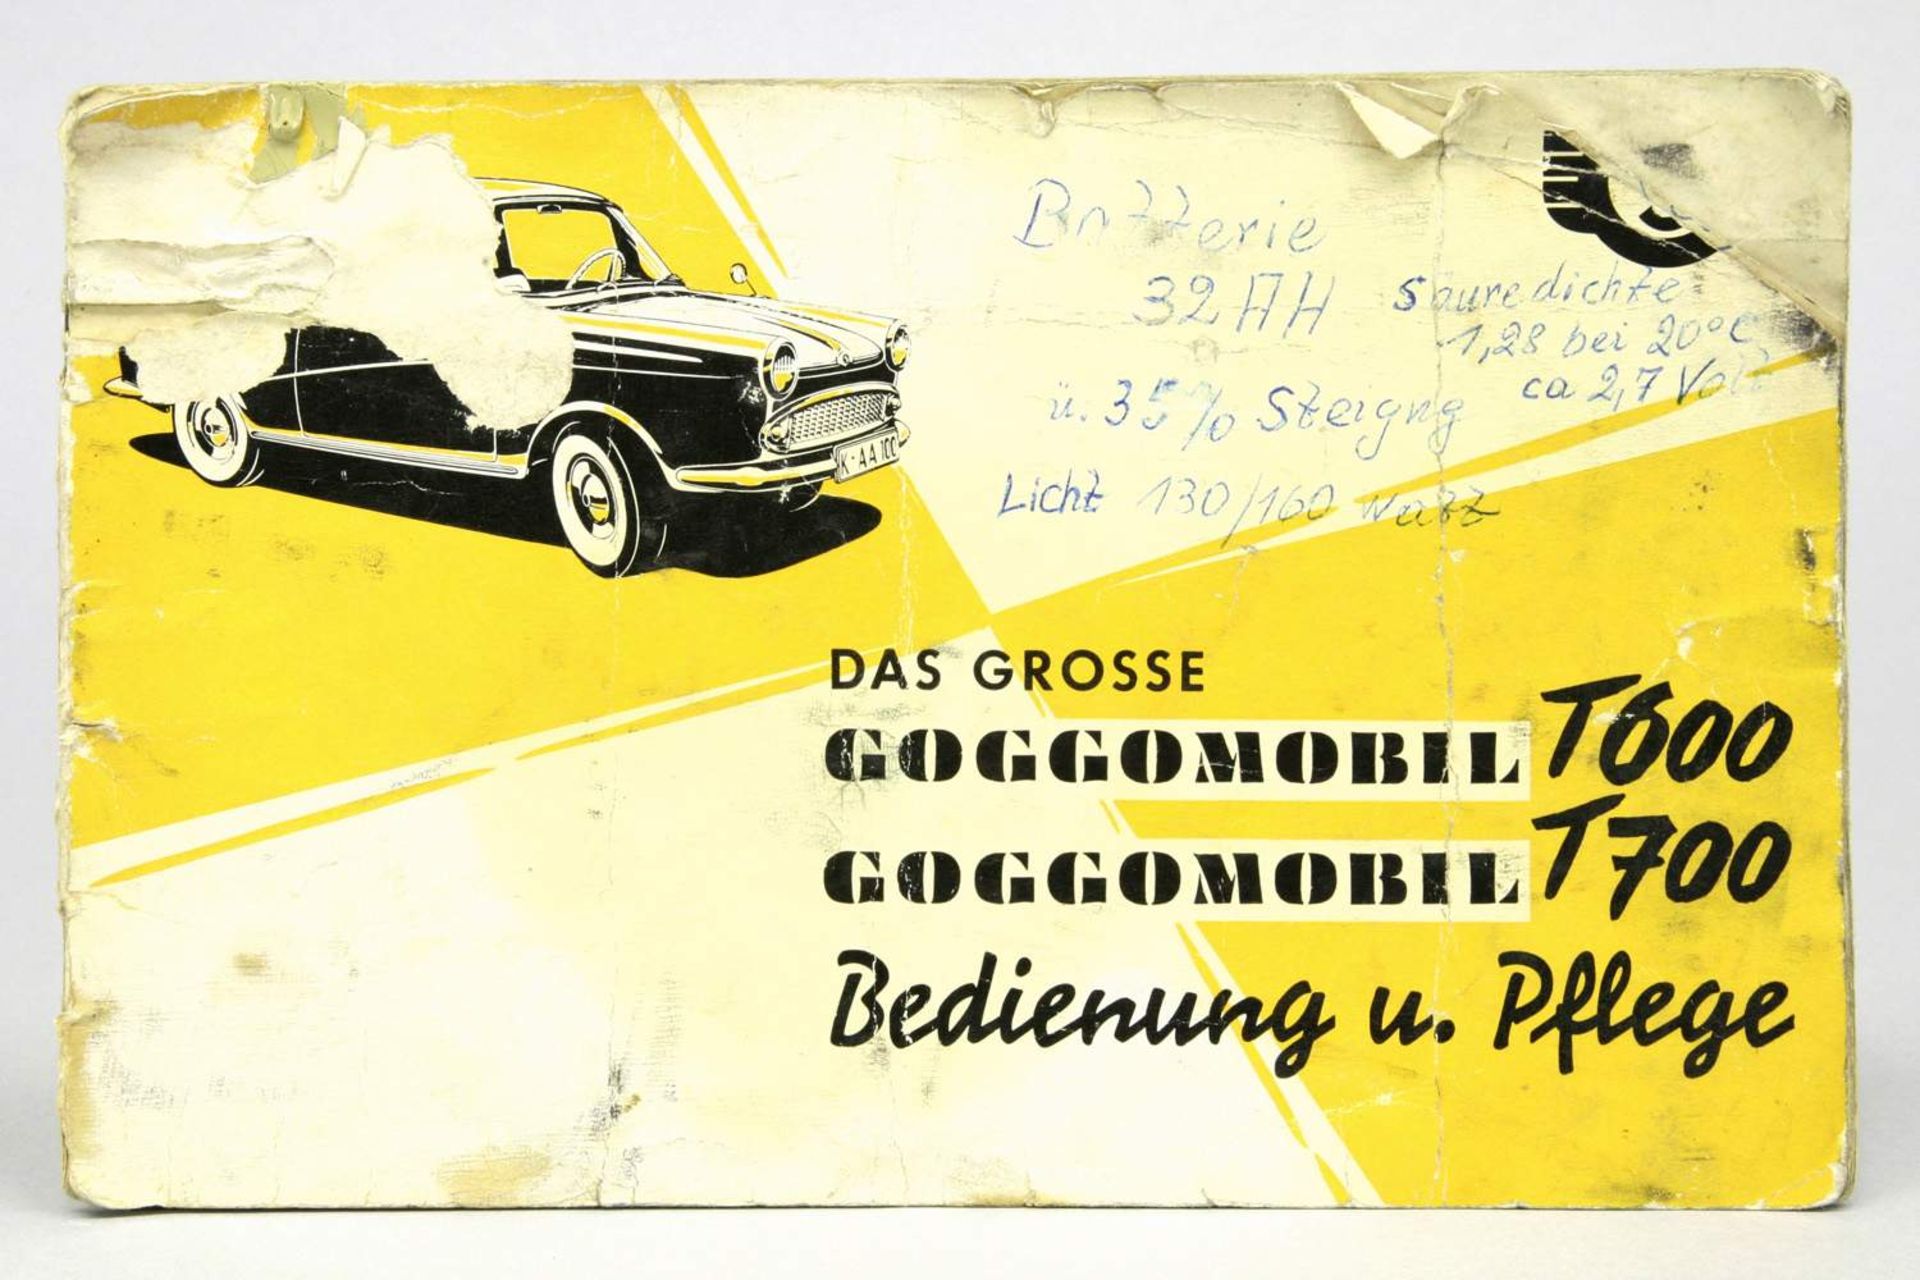 Bedienungs- und Pflegeanleitung Goggomobil T600 / T 700, Ausgabe Dezember 1958, 48 S., gestempelt "